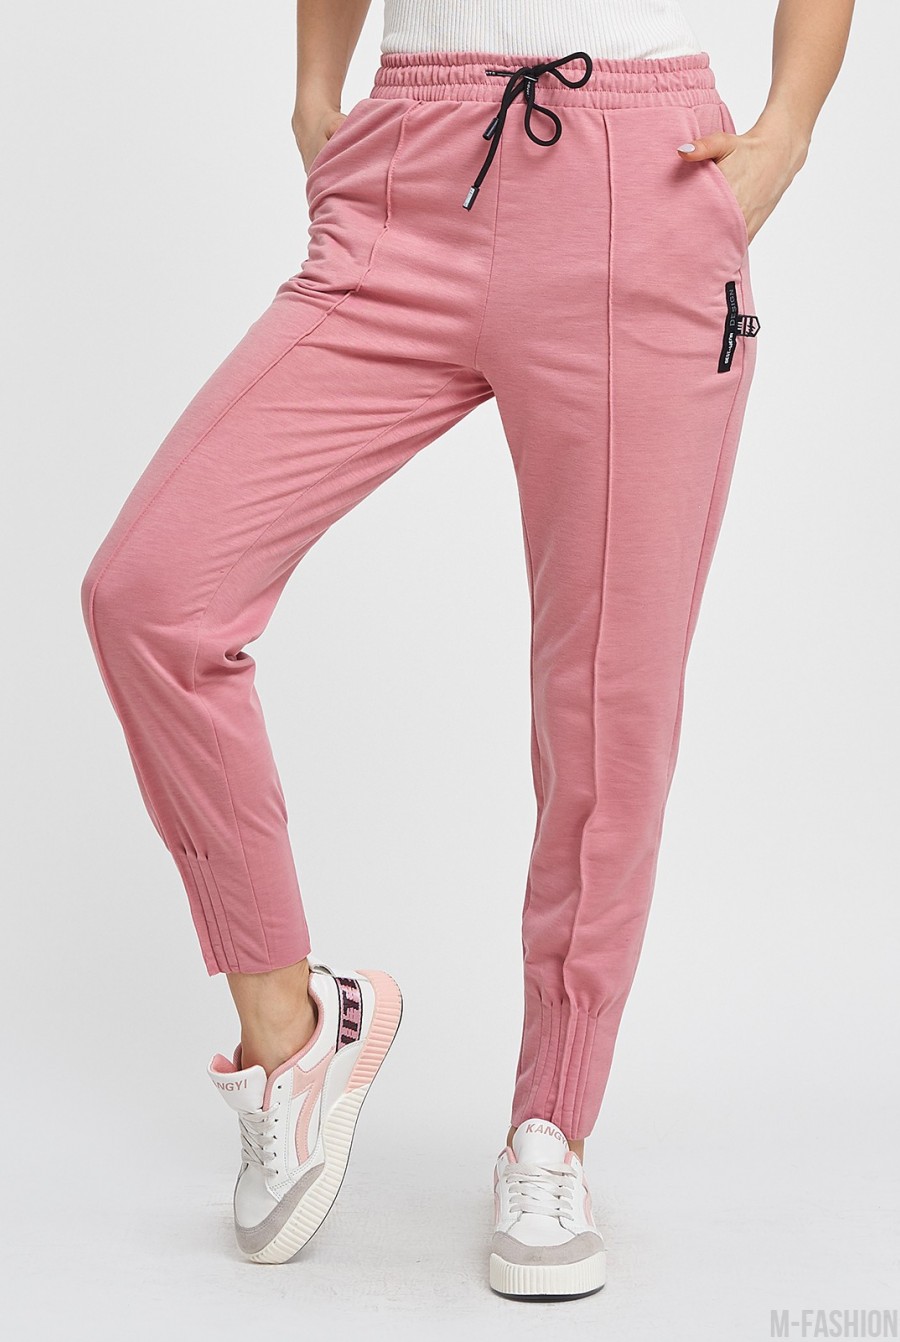 Розовые присборенные спортивные штаны со стрелками - Фото 1